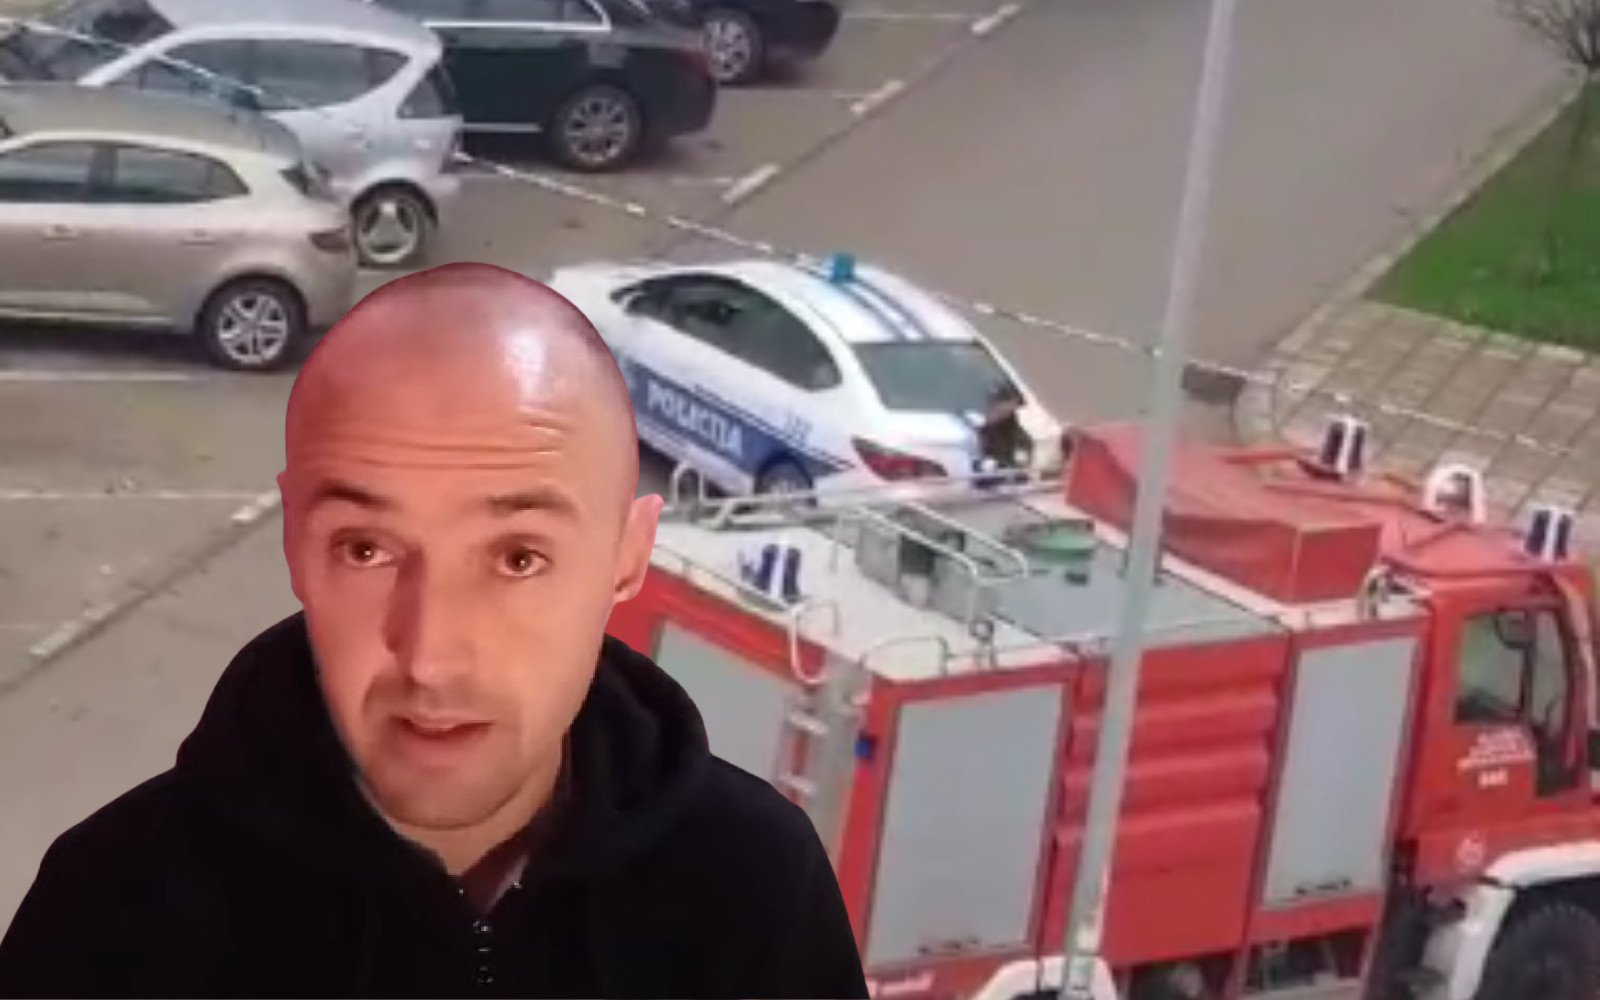 KRAJ DRAME: Momak koji je pretio eksplozivom ispred banke, predao se policiji!